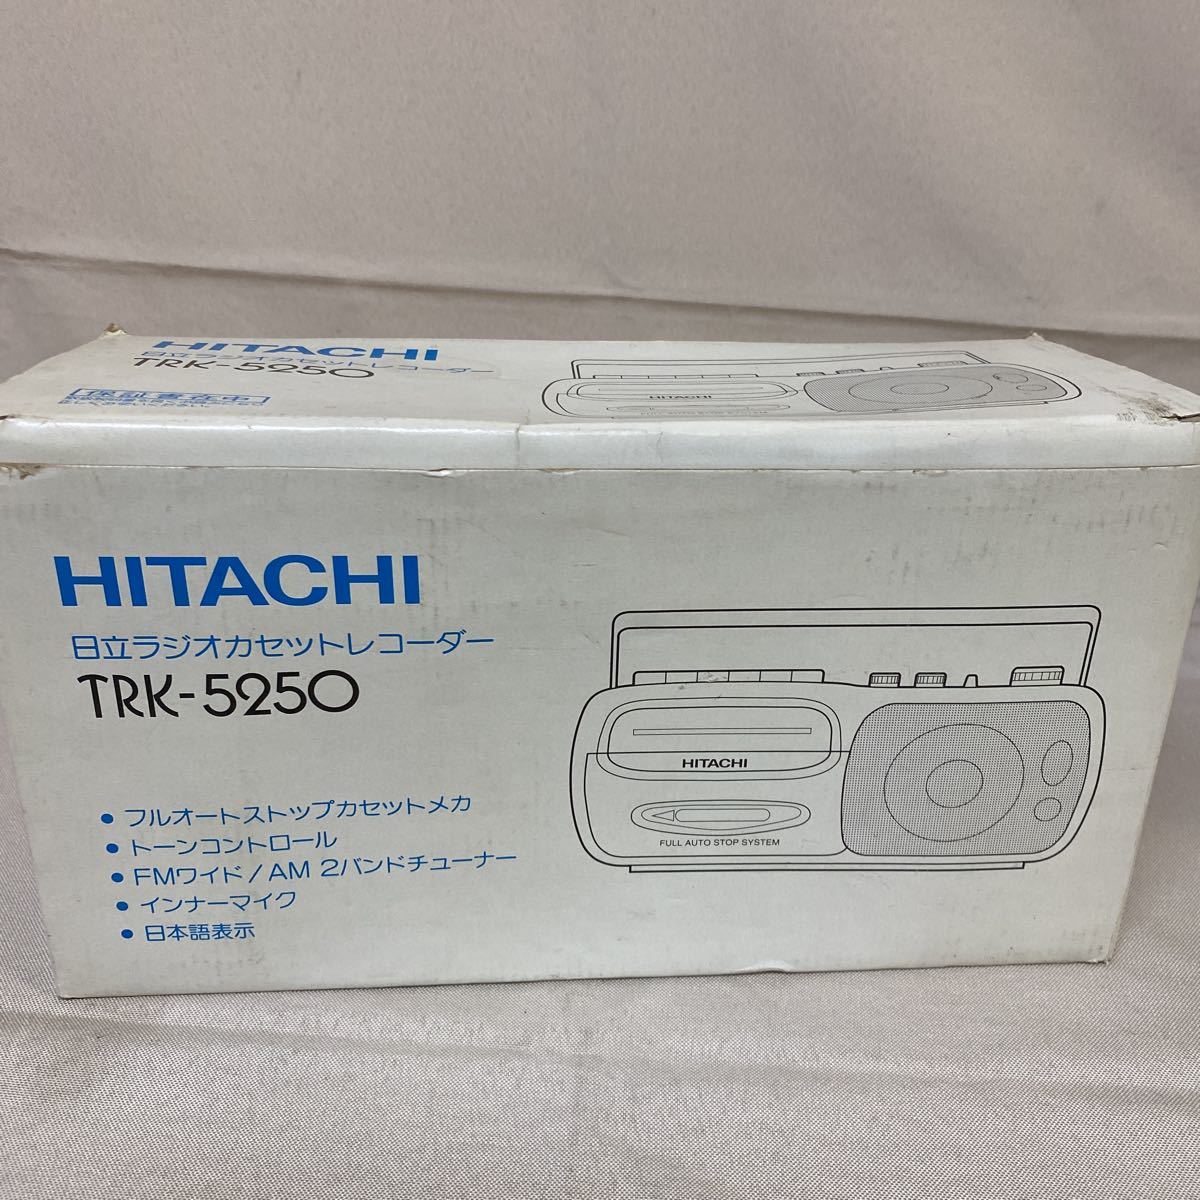 ◆中古 HITACHI/日立 ラジカセ TRK-5250 1995年製 ラジオカセットレコーダー レトロ 箱あり Z-92_画像9